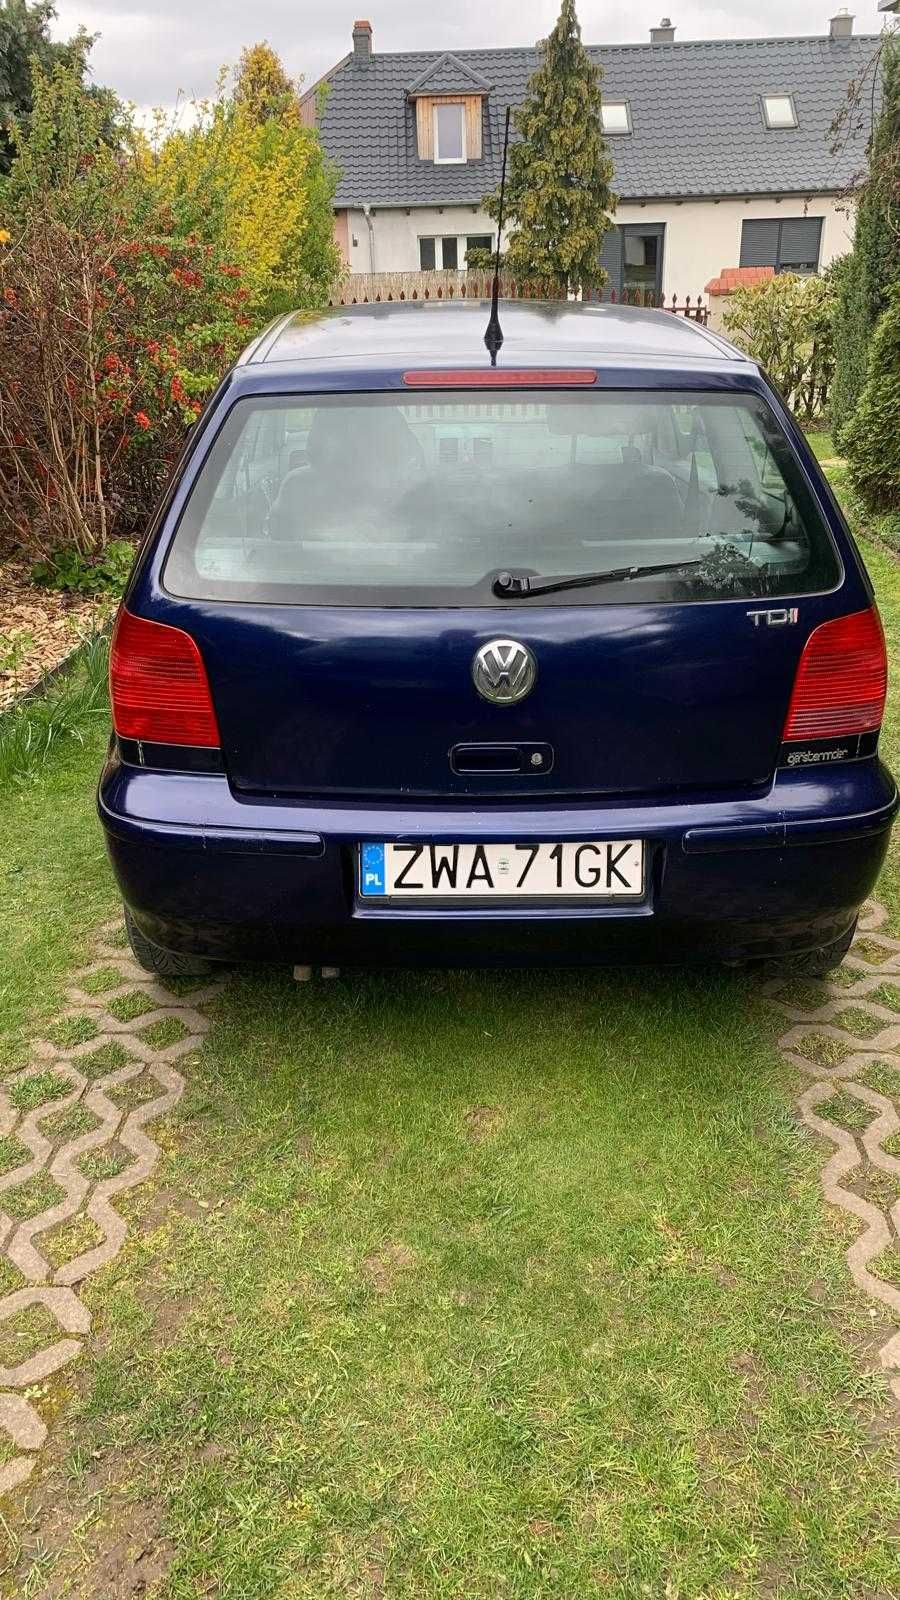 Sprzedam !!! Volkswagen Polo 1,4 TDI , Rok 2000